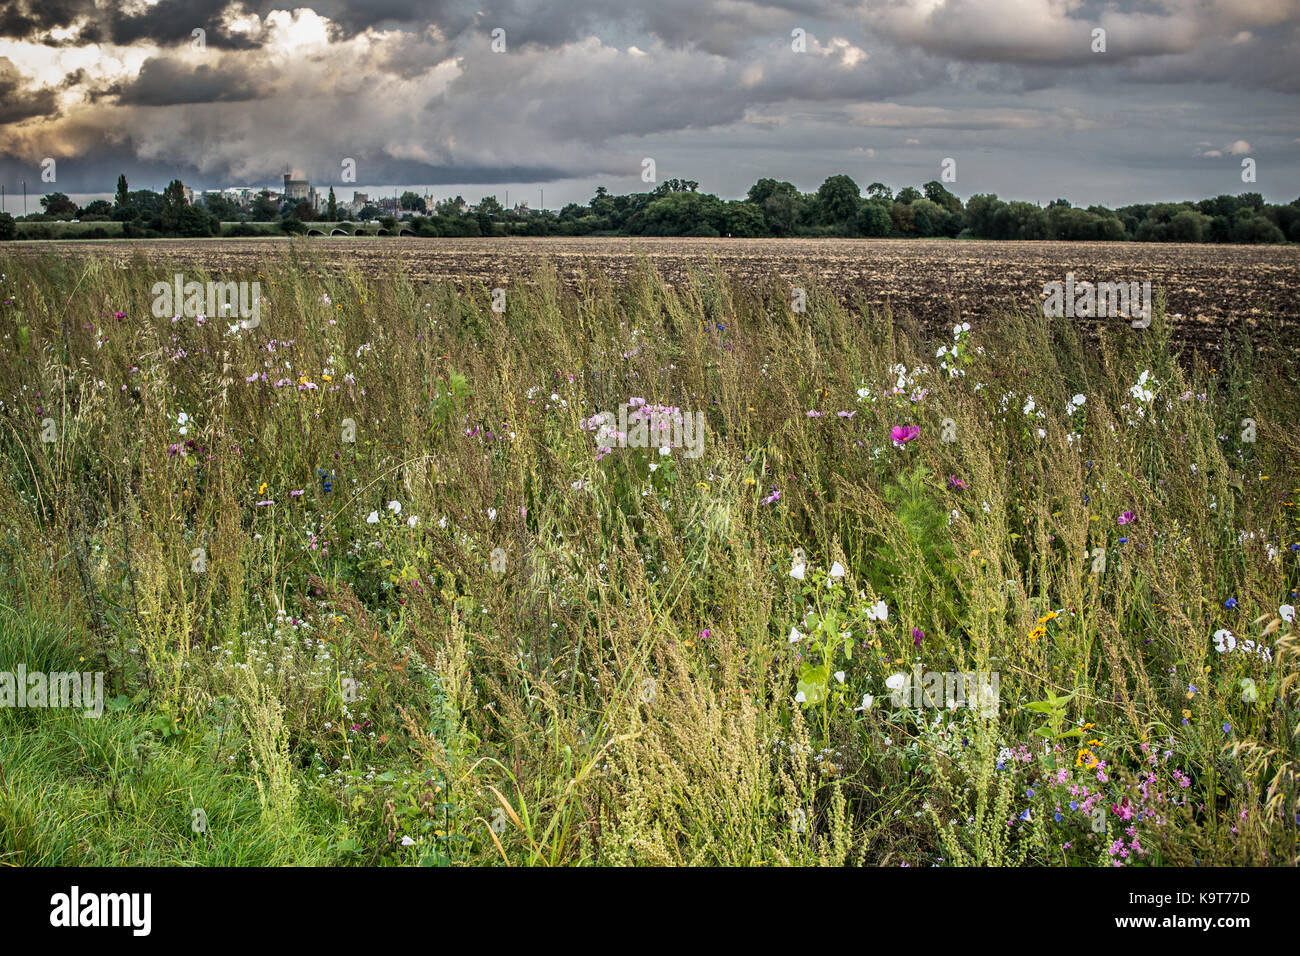 Champ de fleurs sauvages, les marges entre les villes de eton eton et wick, Berkshire, Angleterre. Banque D'Images